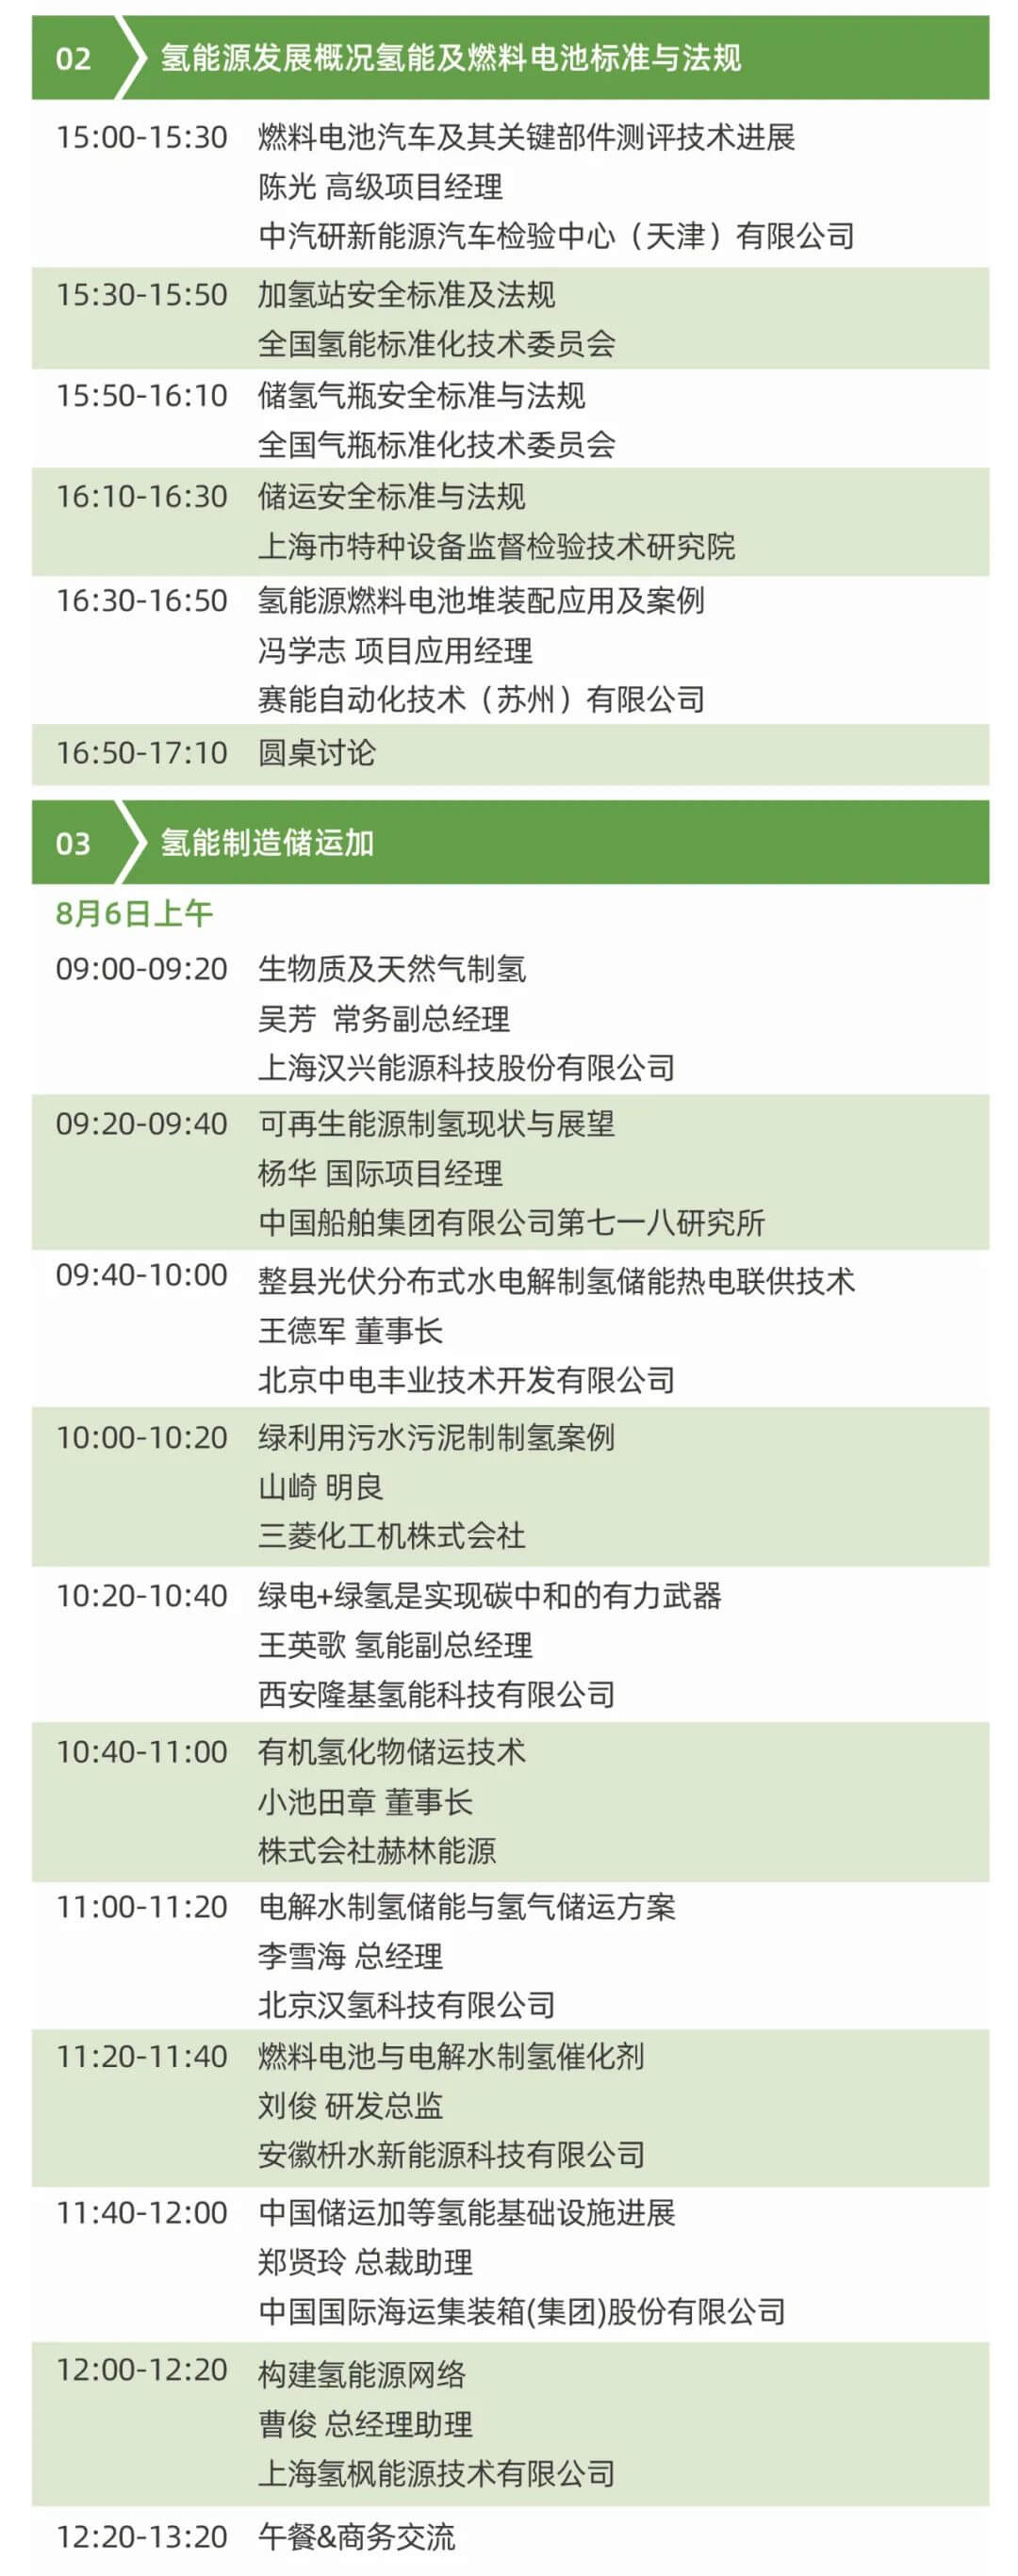 2021中日氢能技术及产业协同发展大会将于8月5-7日在上海举办！ .jpg